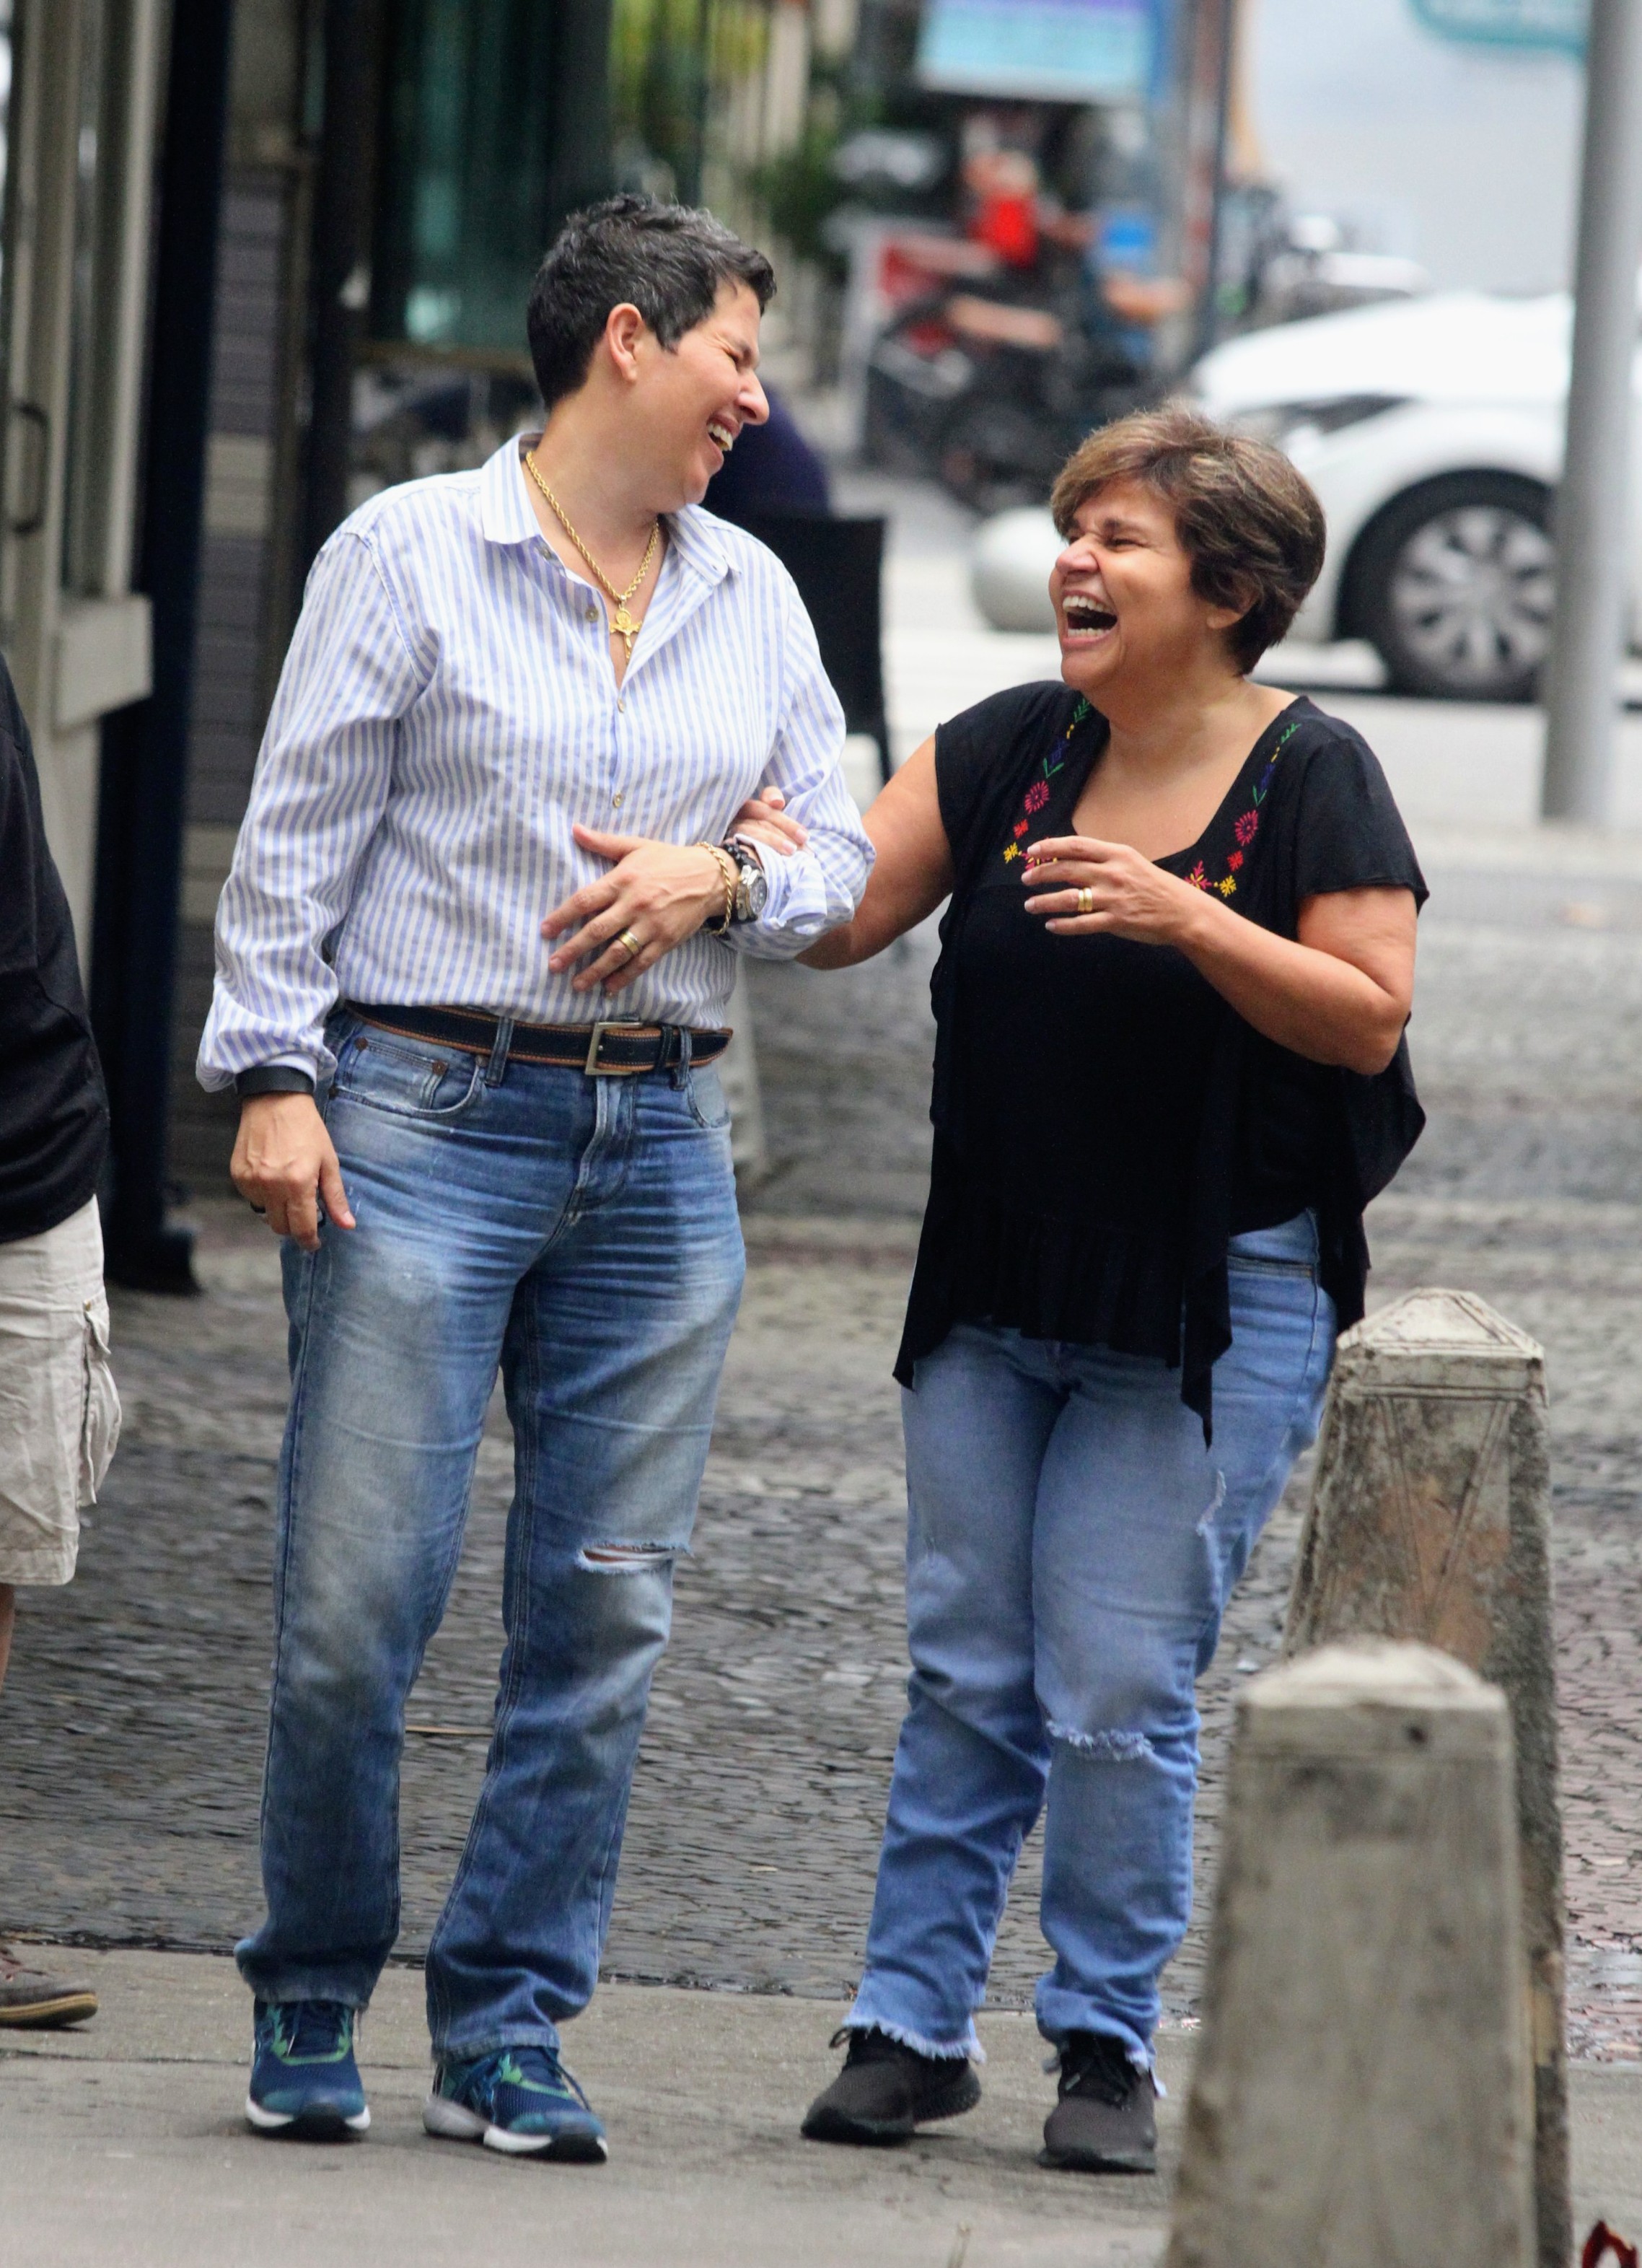 Foto de Adriane Bonato de braço dado com Claudia Rodrigues, ambas rindo muito enquanto caminham pela rua